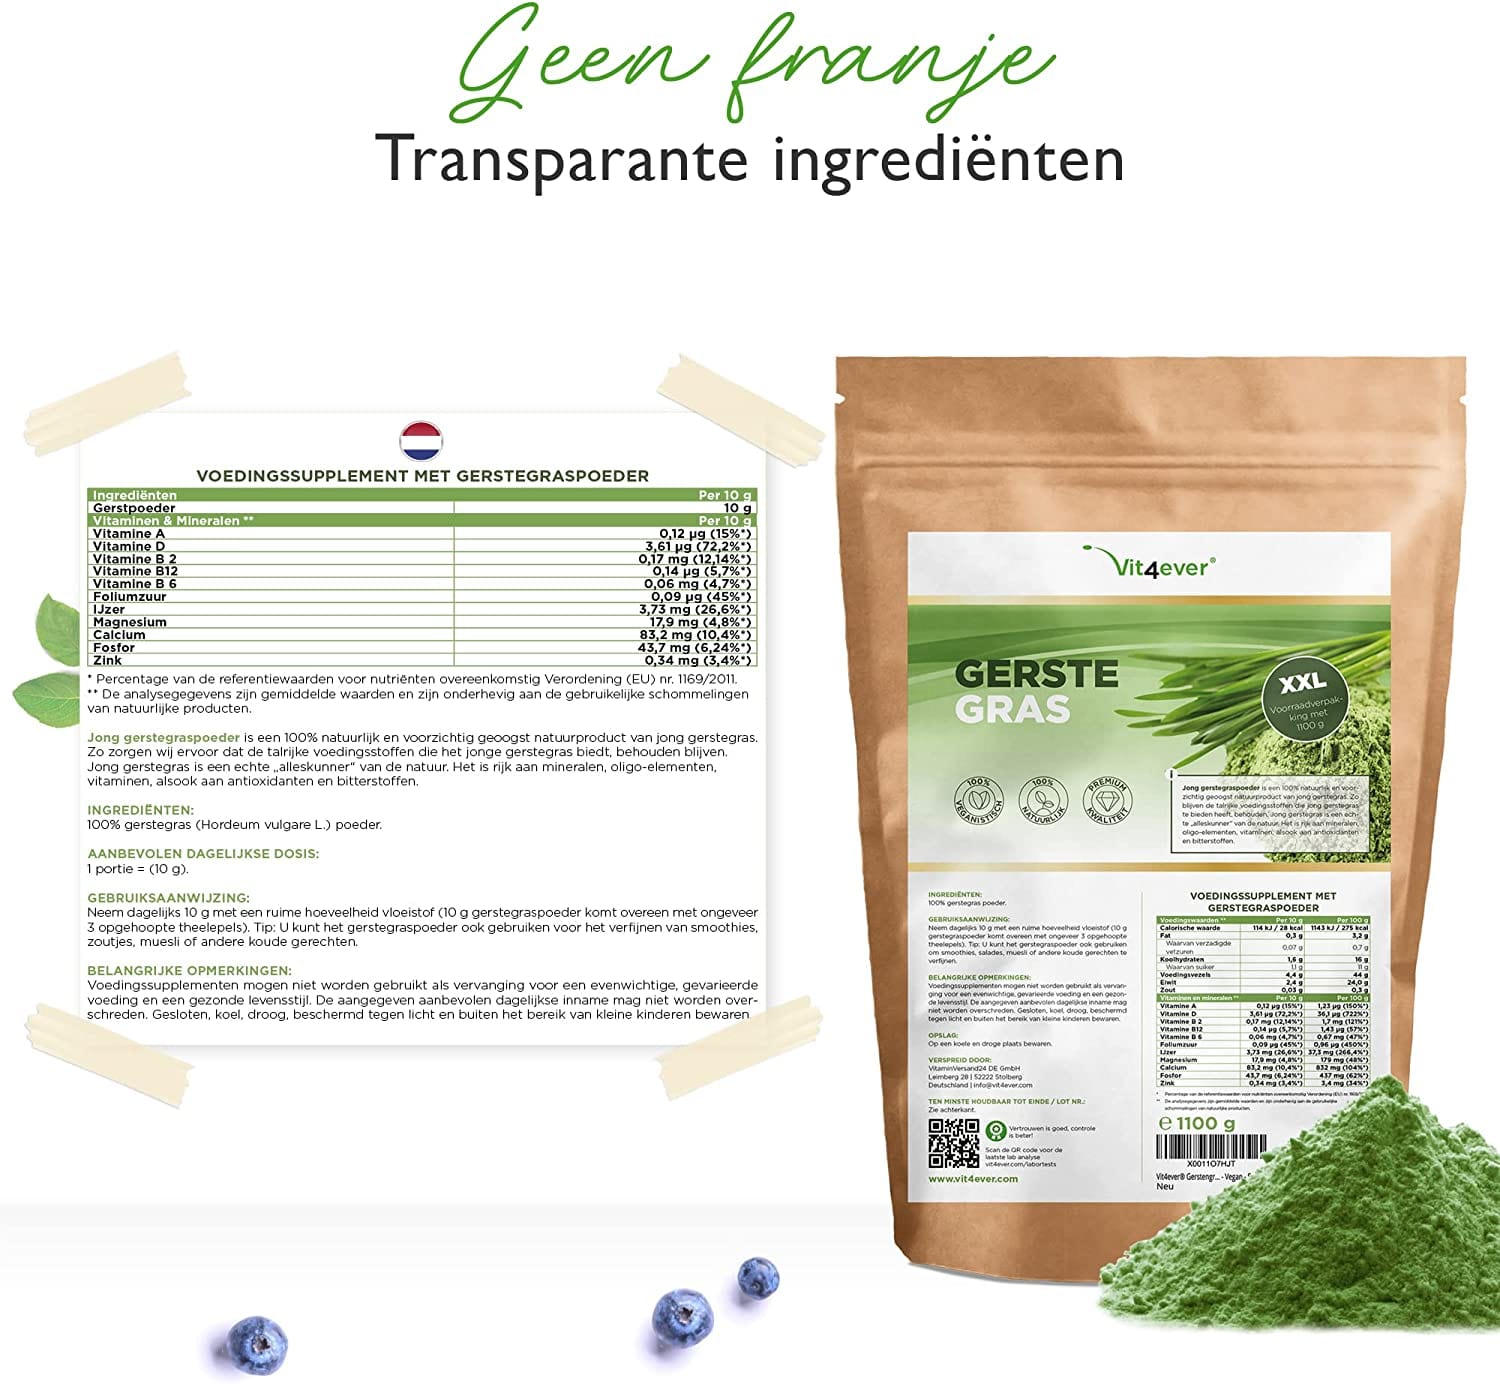 Vit4ever Gerstegras - 1100 g (1,1 kg) - Jong gerstegraspoeder - Herkomst Nederland - Rijk aan mineralen & vitaminen